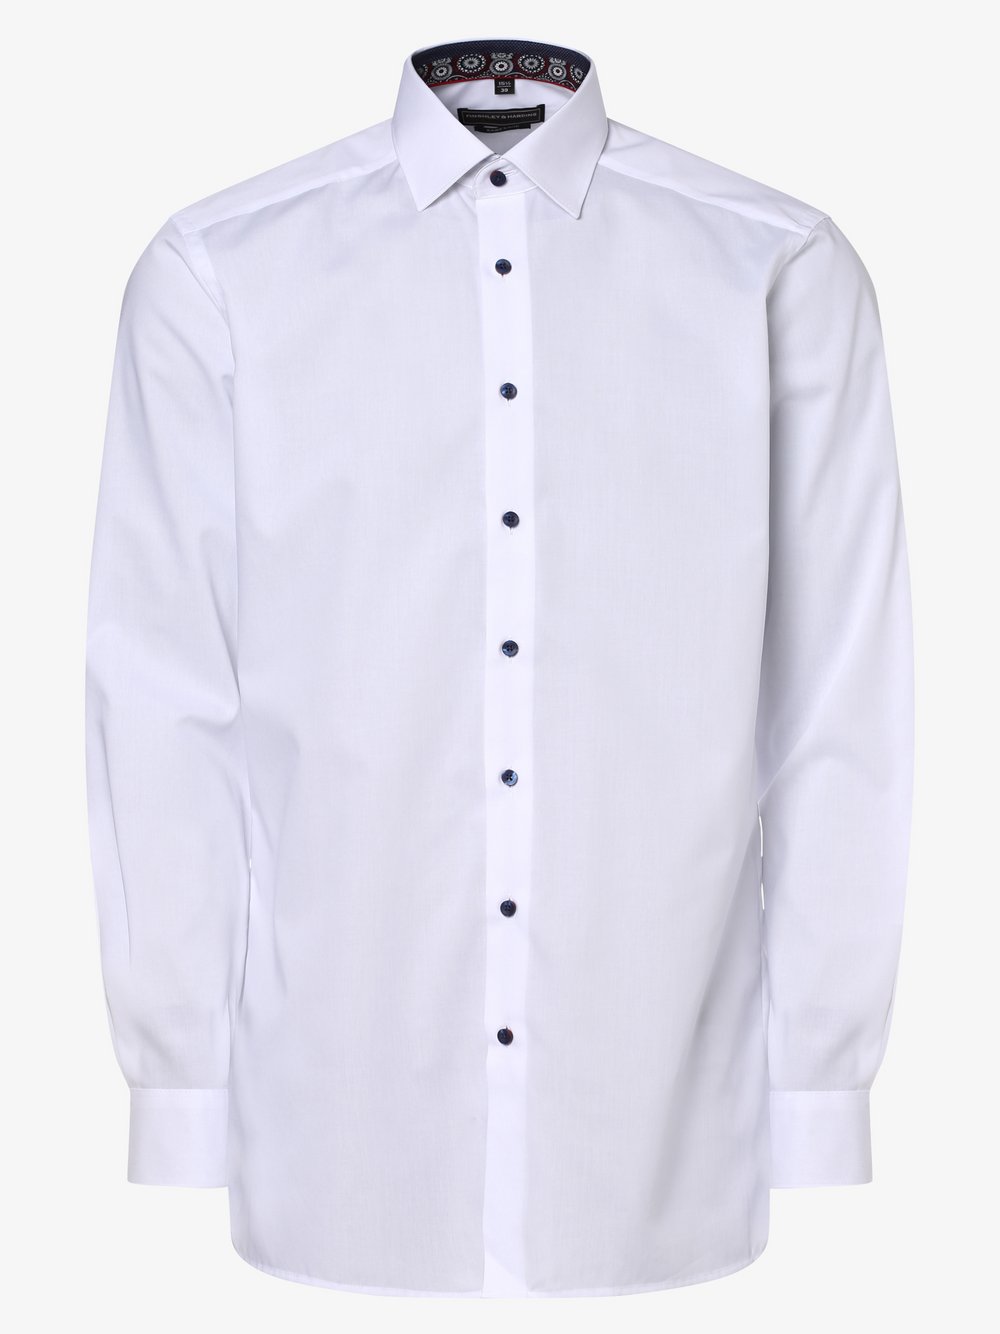 Finshley & Harding - Koszula męska łatwa w prasowaniu z bardzo długim rękawem, biały